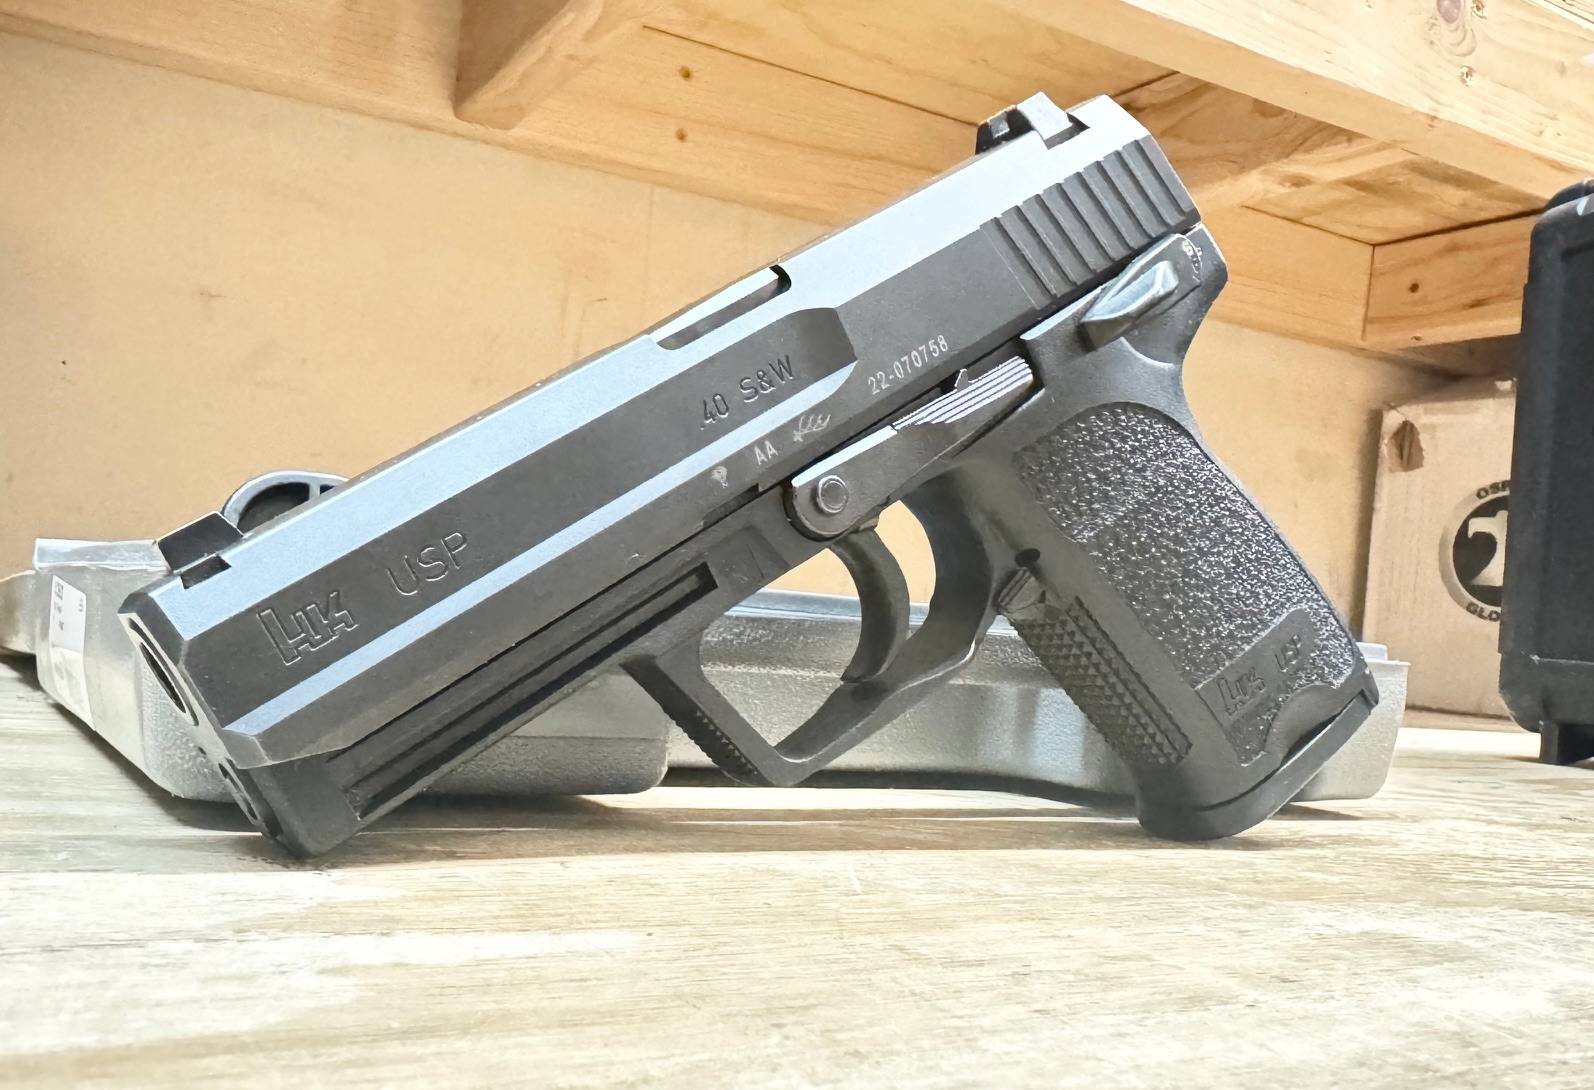 HK USP V1 40 S&W Pistol 4.25 Black - Made in Germany-img-0